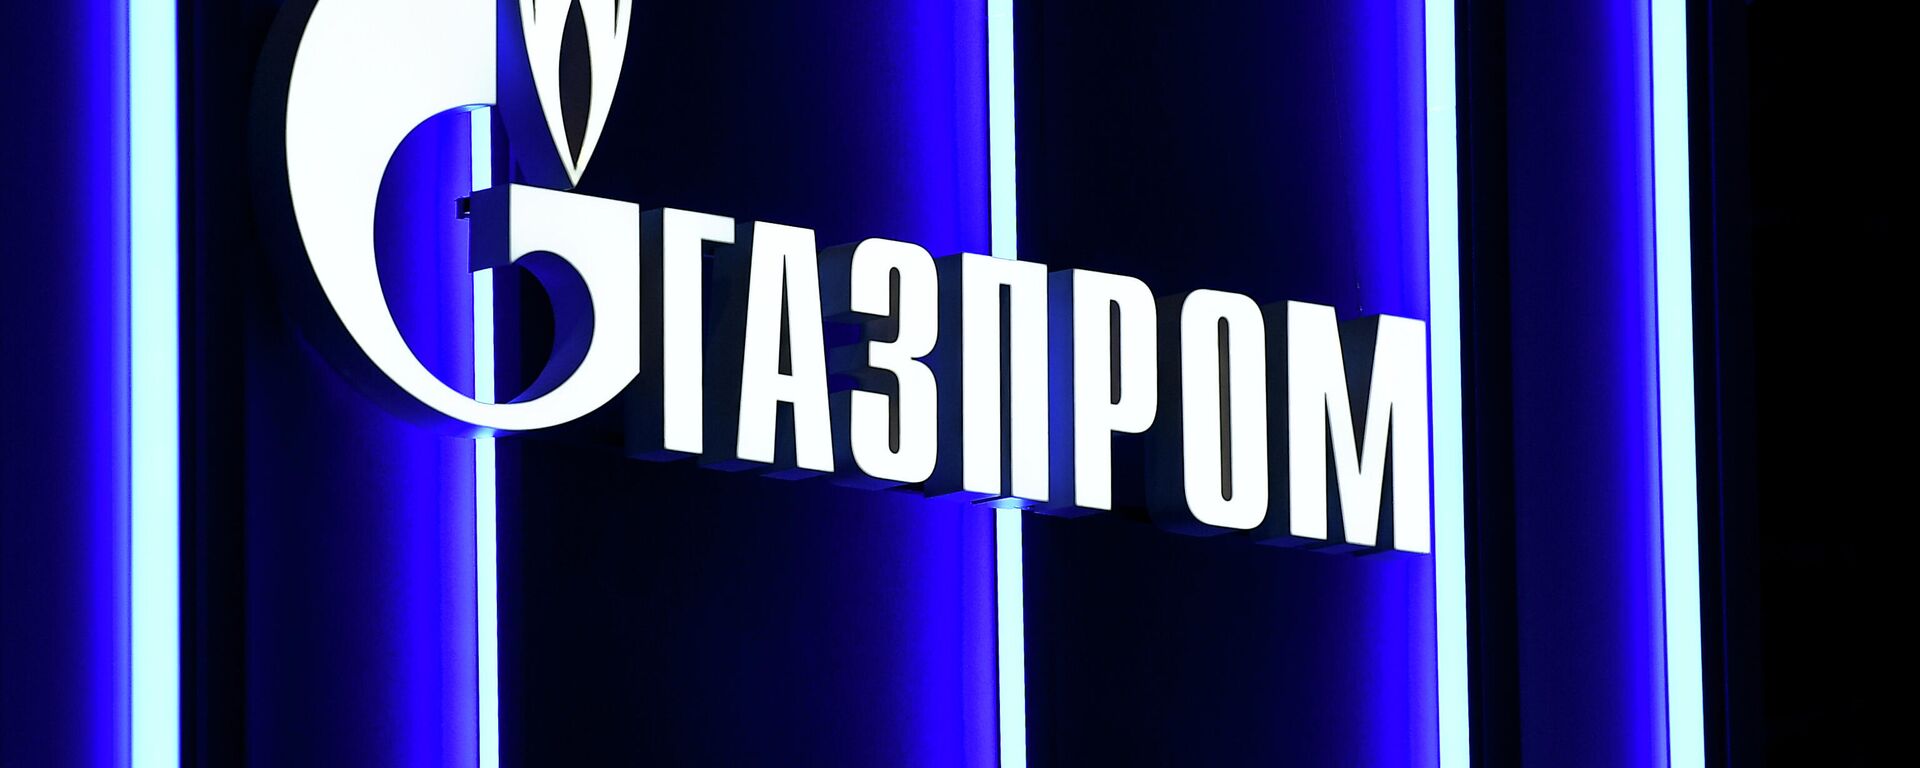 Логотип компании Газпром, архивное фото - Sputnik Литва, 1920, 22.09.2021